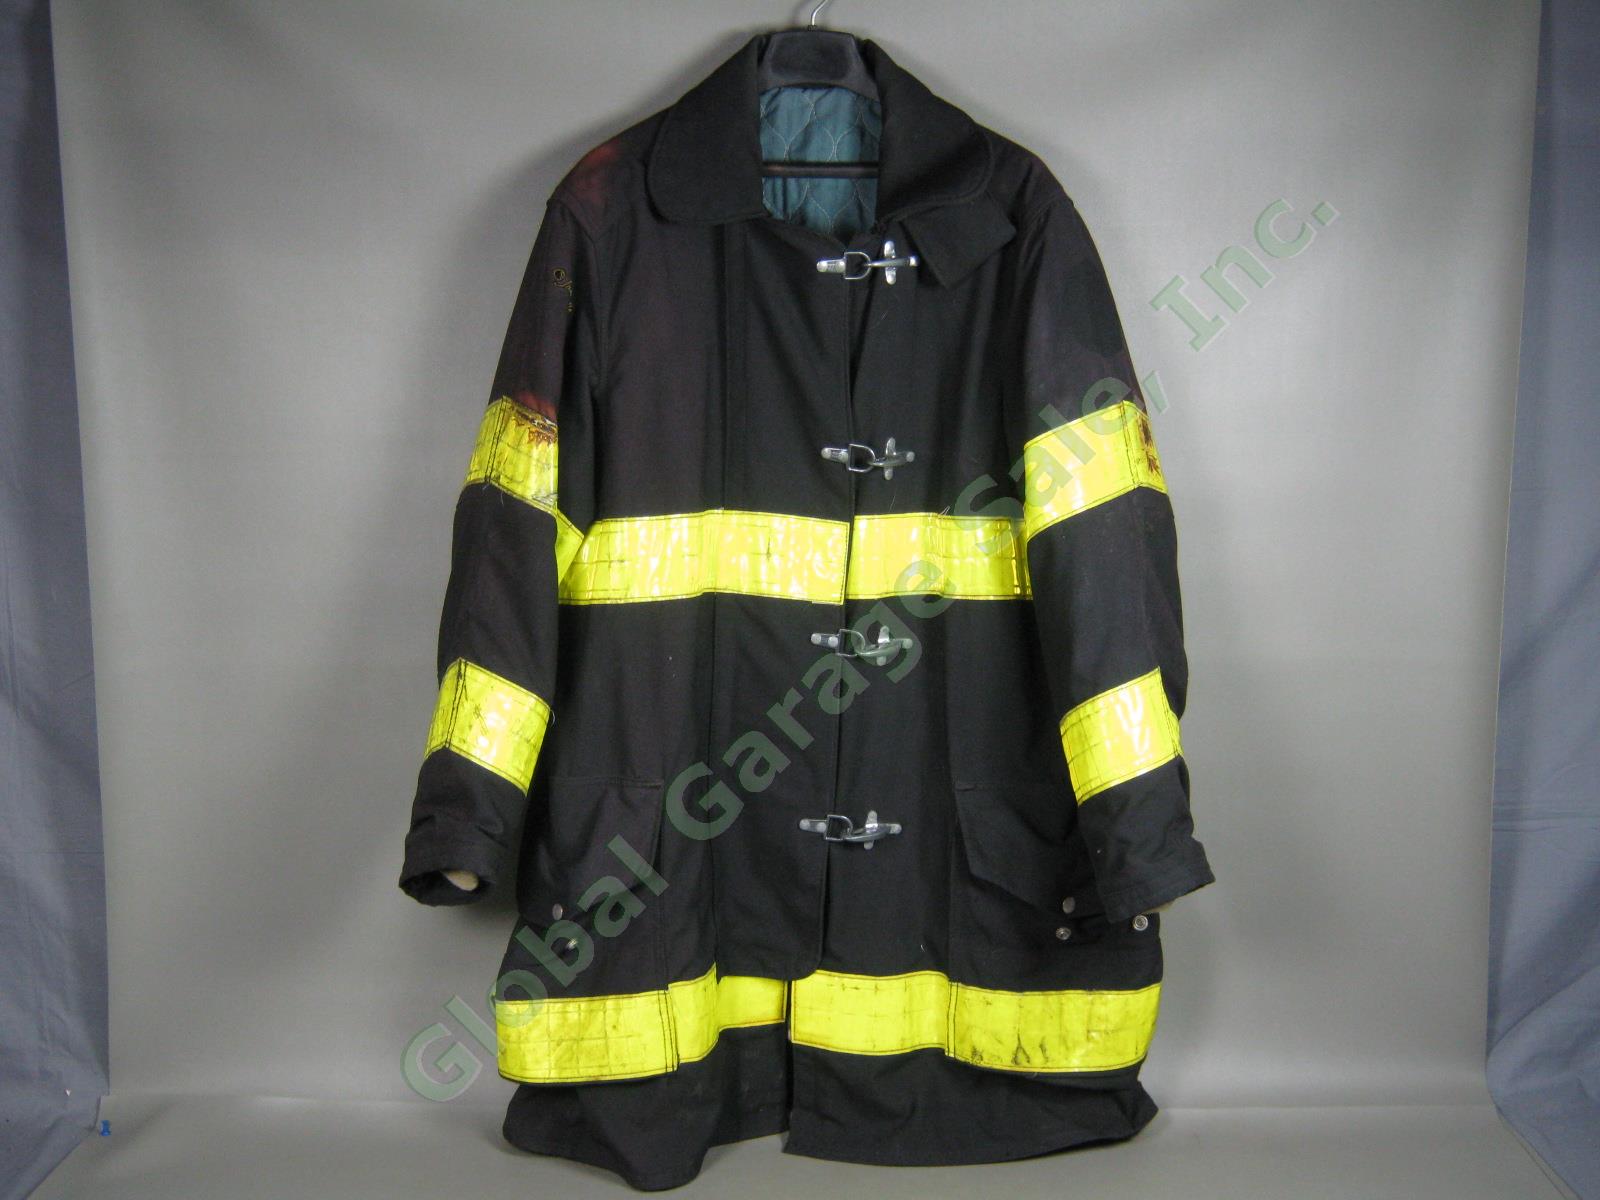 Vtg 1993 Janesville FDNY NY Fire Dept Summer Firefighter Jacket 44/40 Exc Cond!